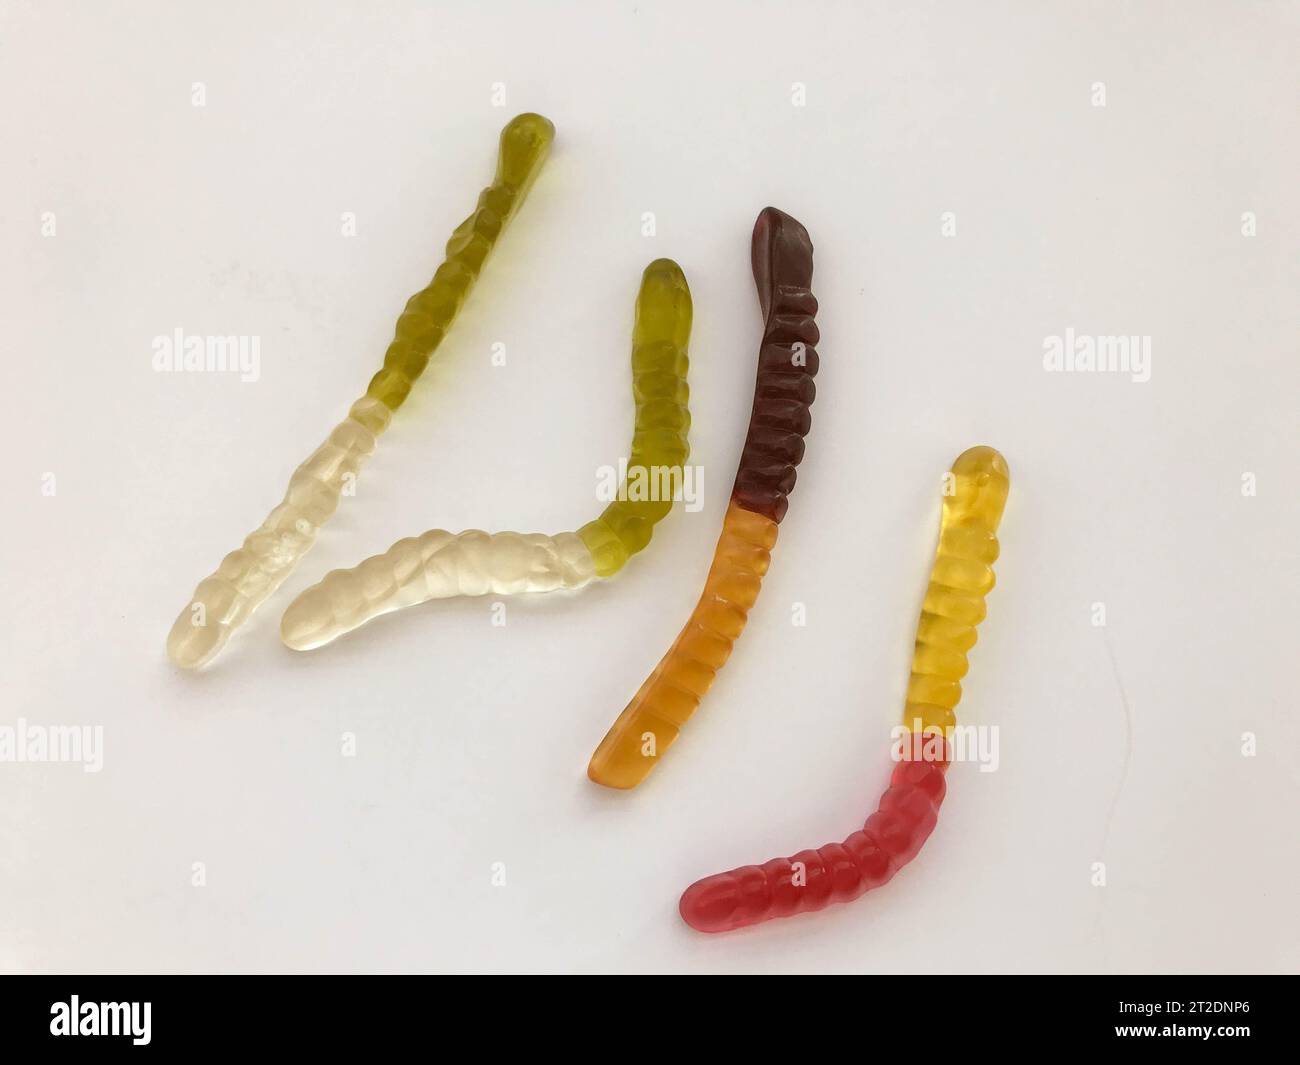 Marmeladenwürmer. Gelatinöse Würmer, mehrfarbig. Weiß-grüner und gelb-brauner Wurm krabbeln auf weißem mattem Hintergrund zusammen. Stockfoto